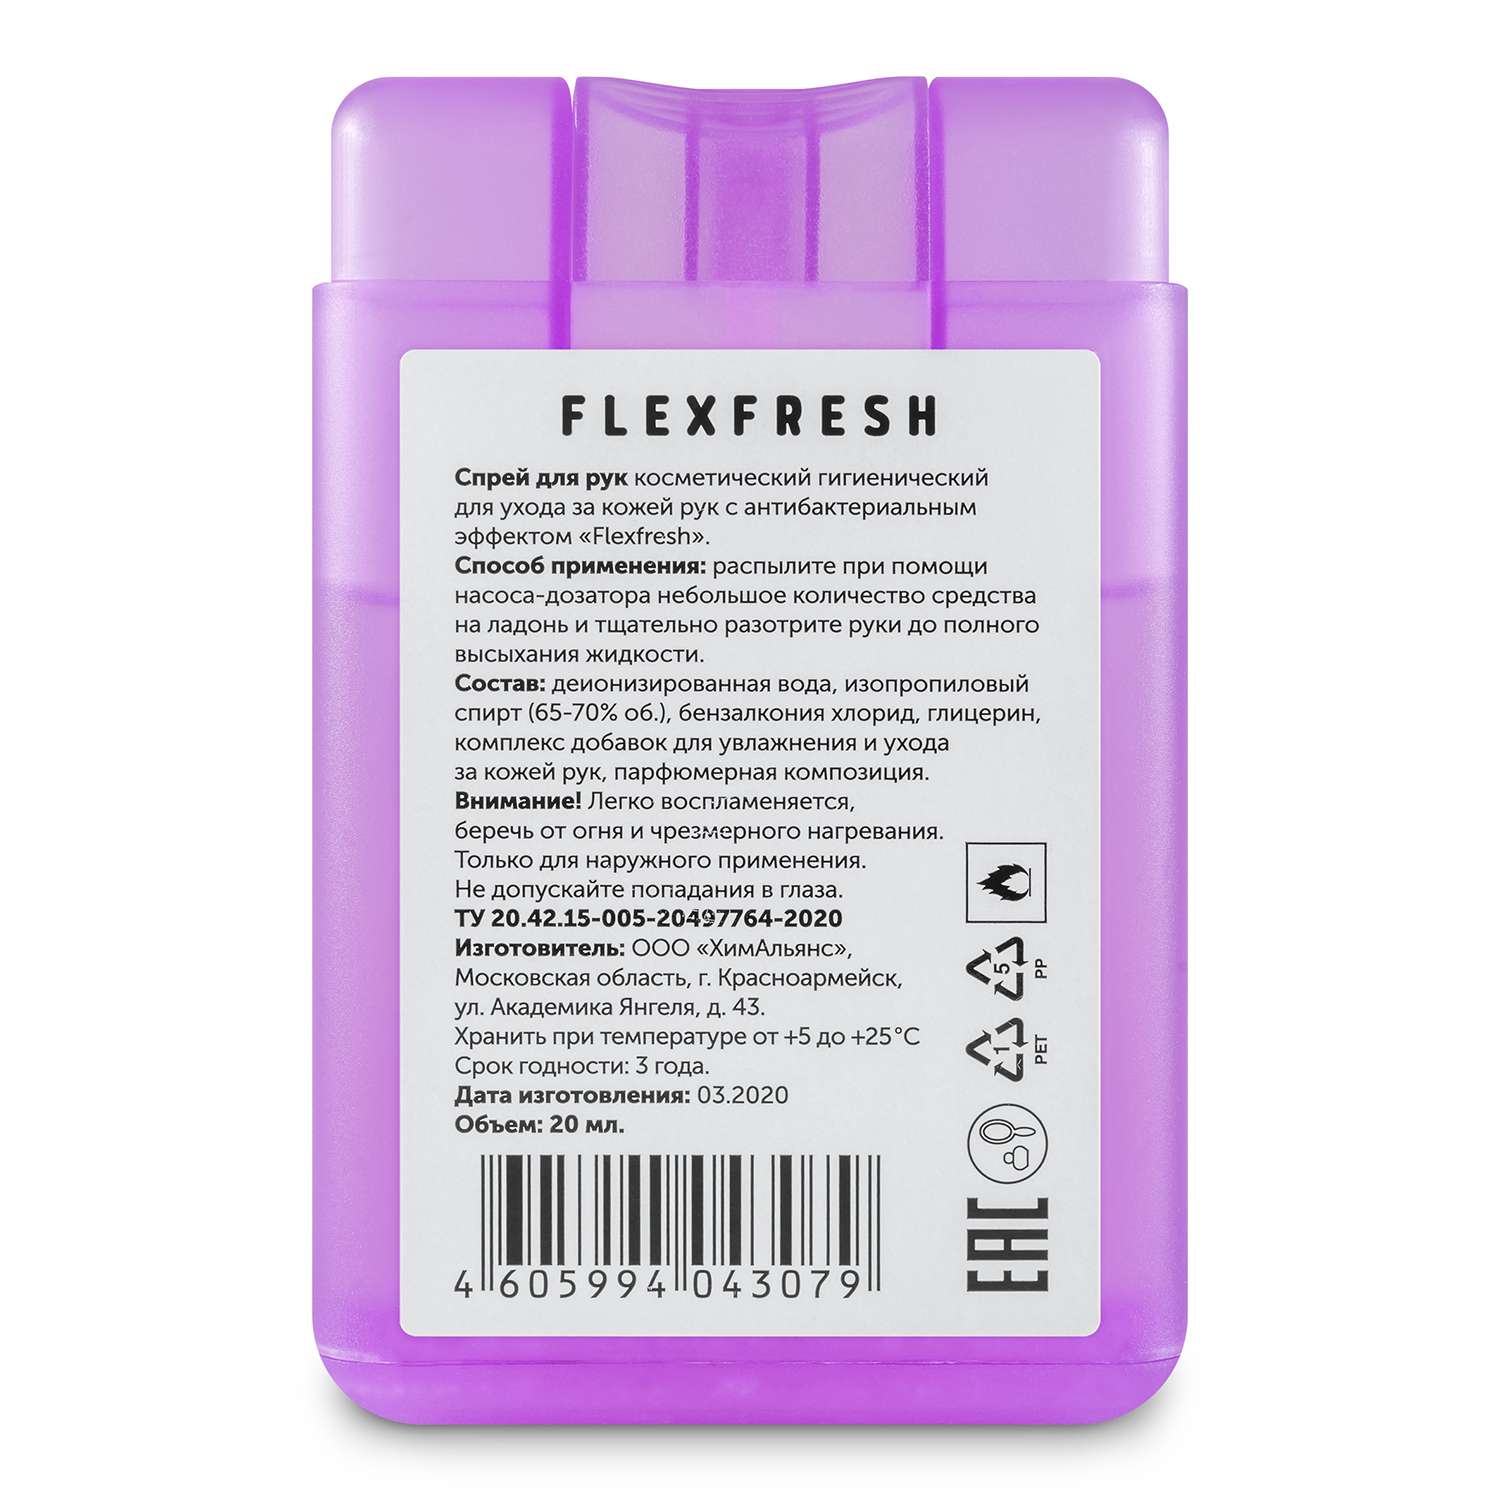 Спрей для рук Flexfresh спиртовой для детей и взрослых фиолетовый - фото 2